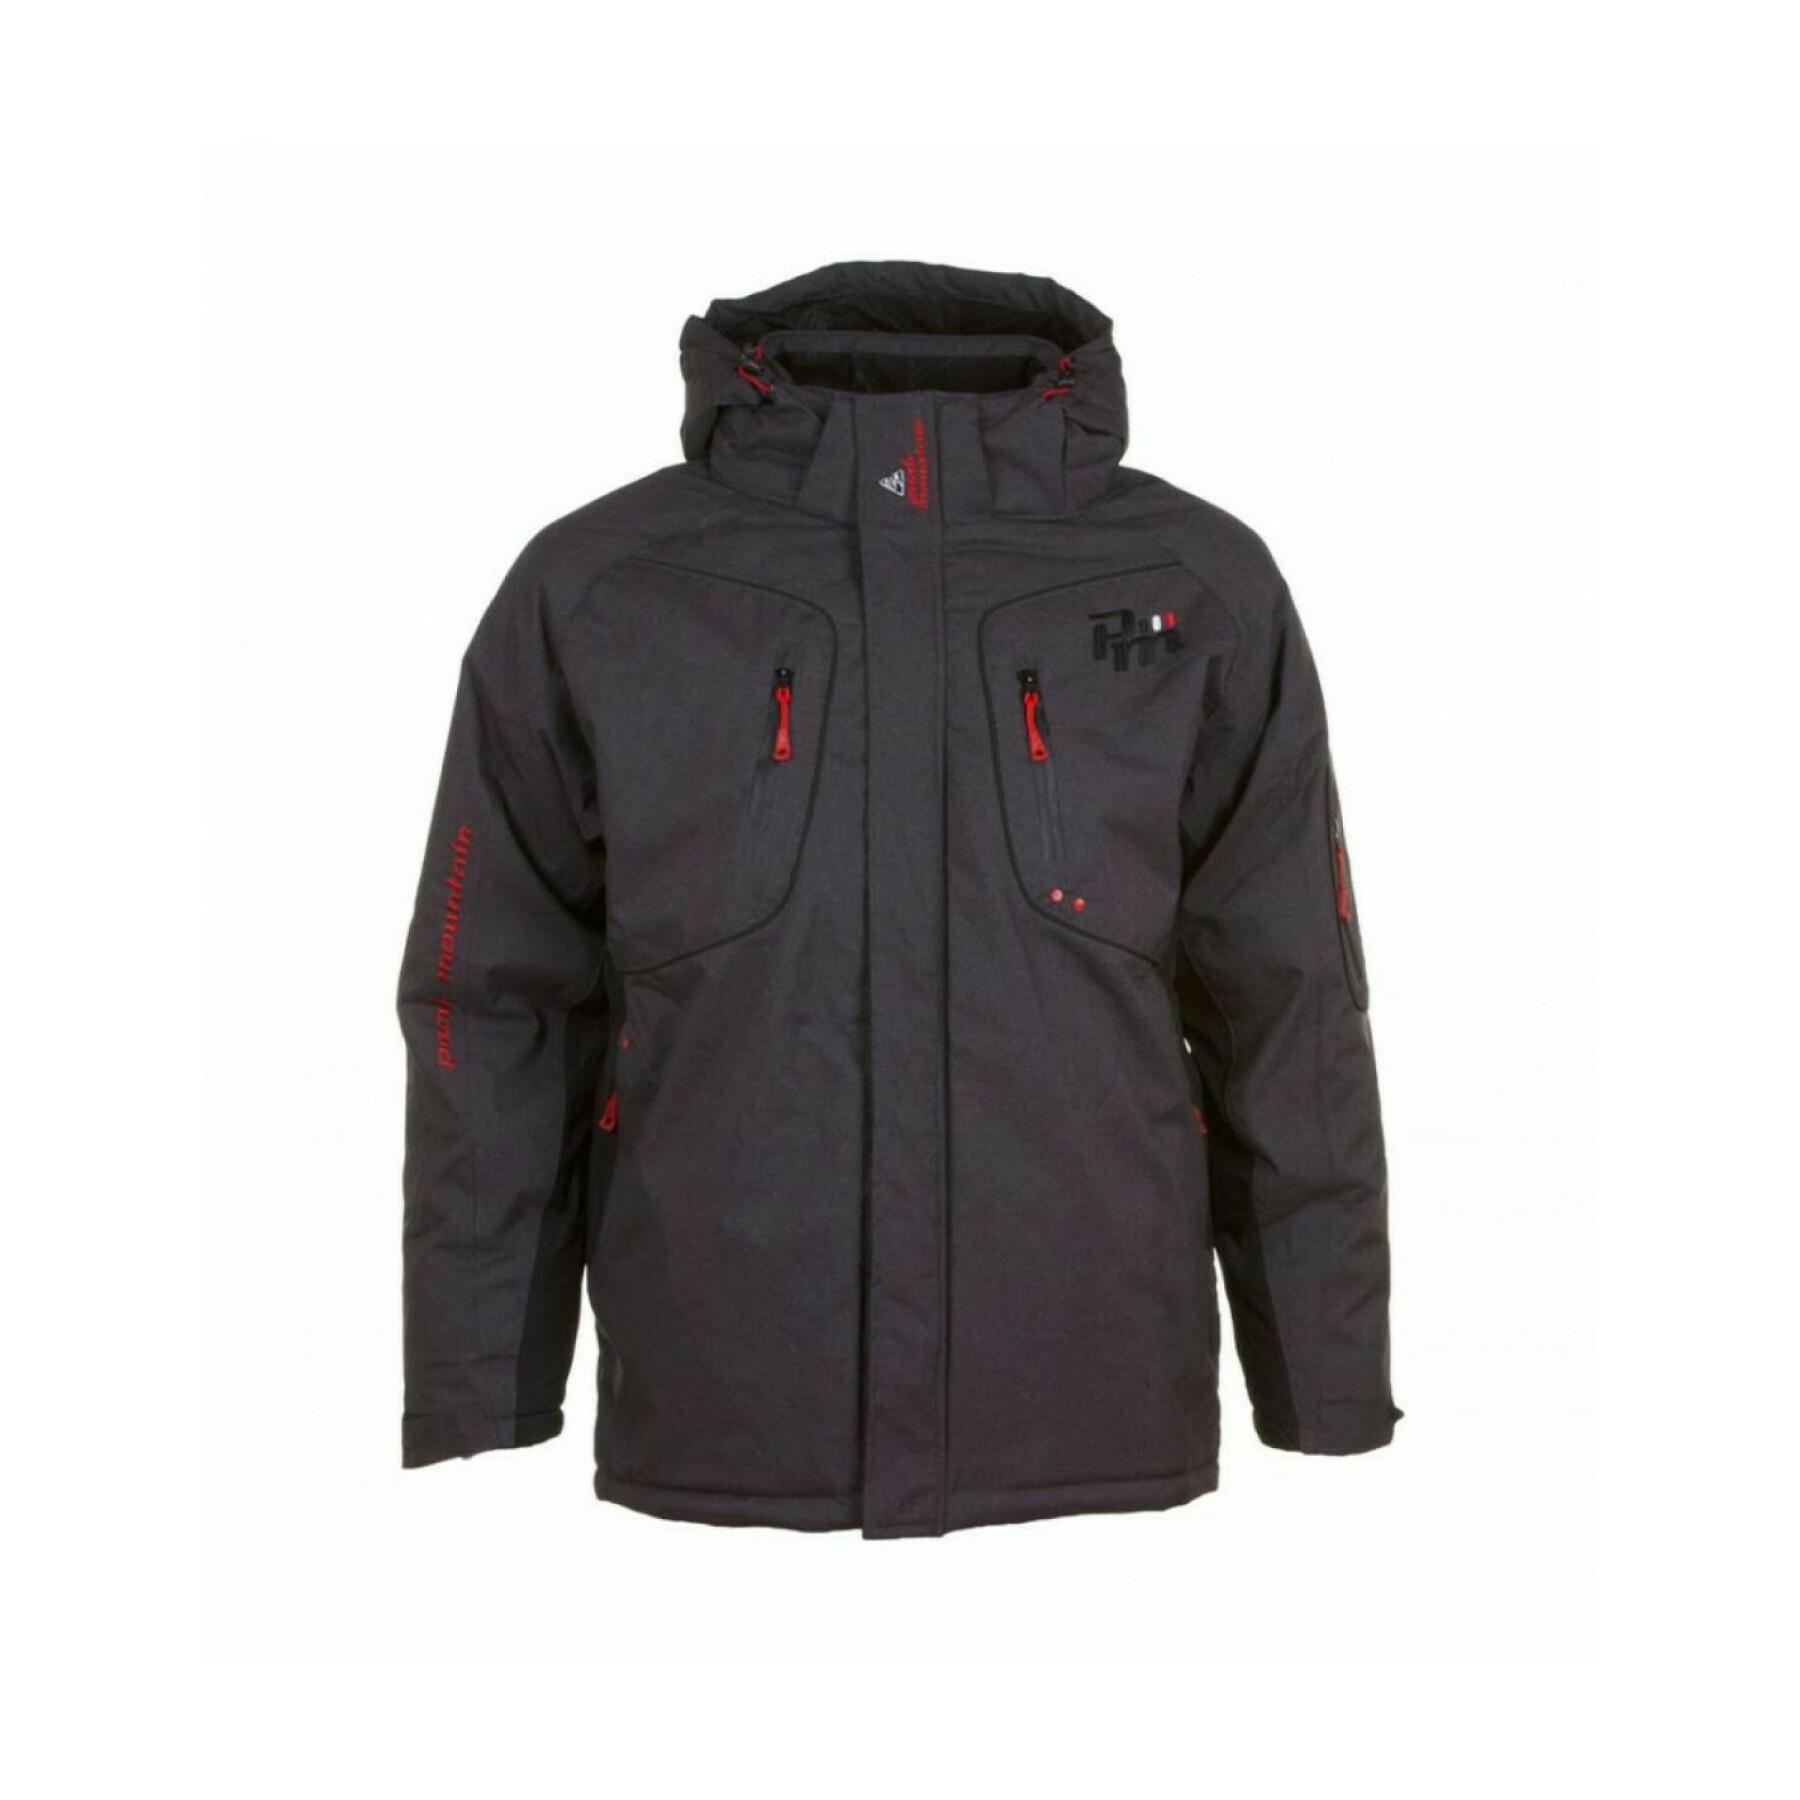 Ski jacket Peak Mountain Camate Softshell jackets - Men's clothing - Winter Sports